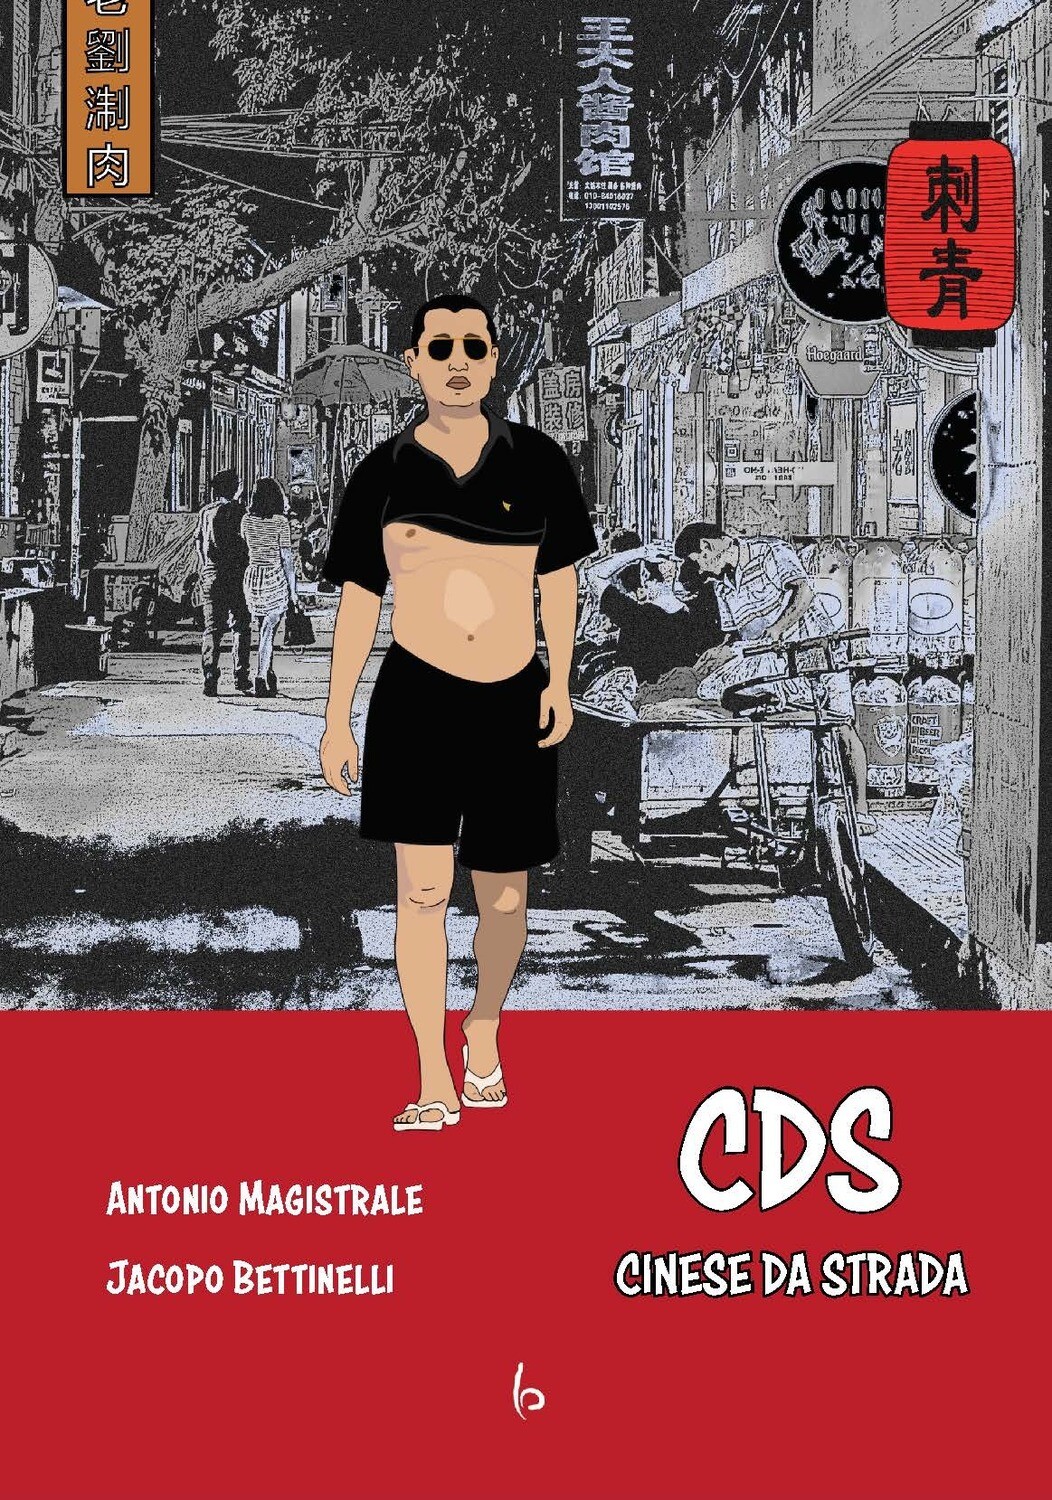 CDS - Cinese Da Strada